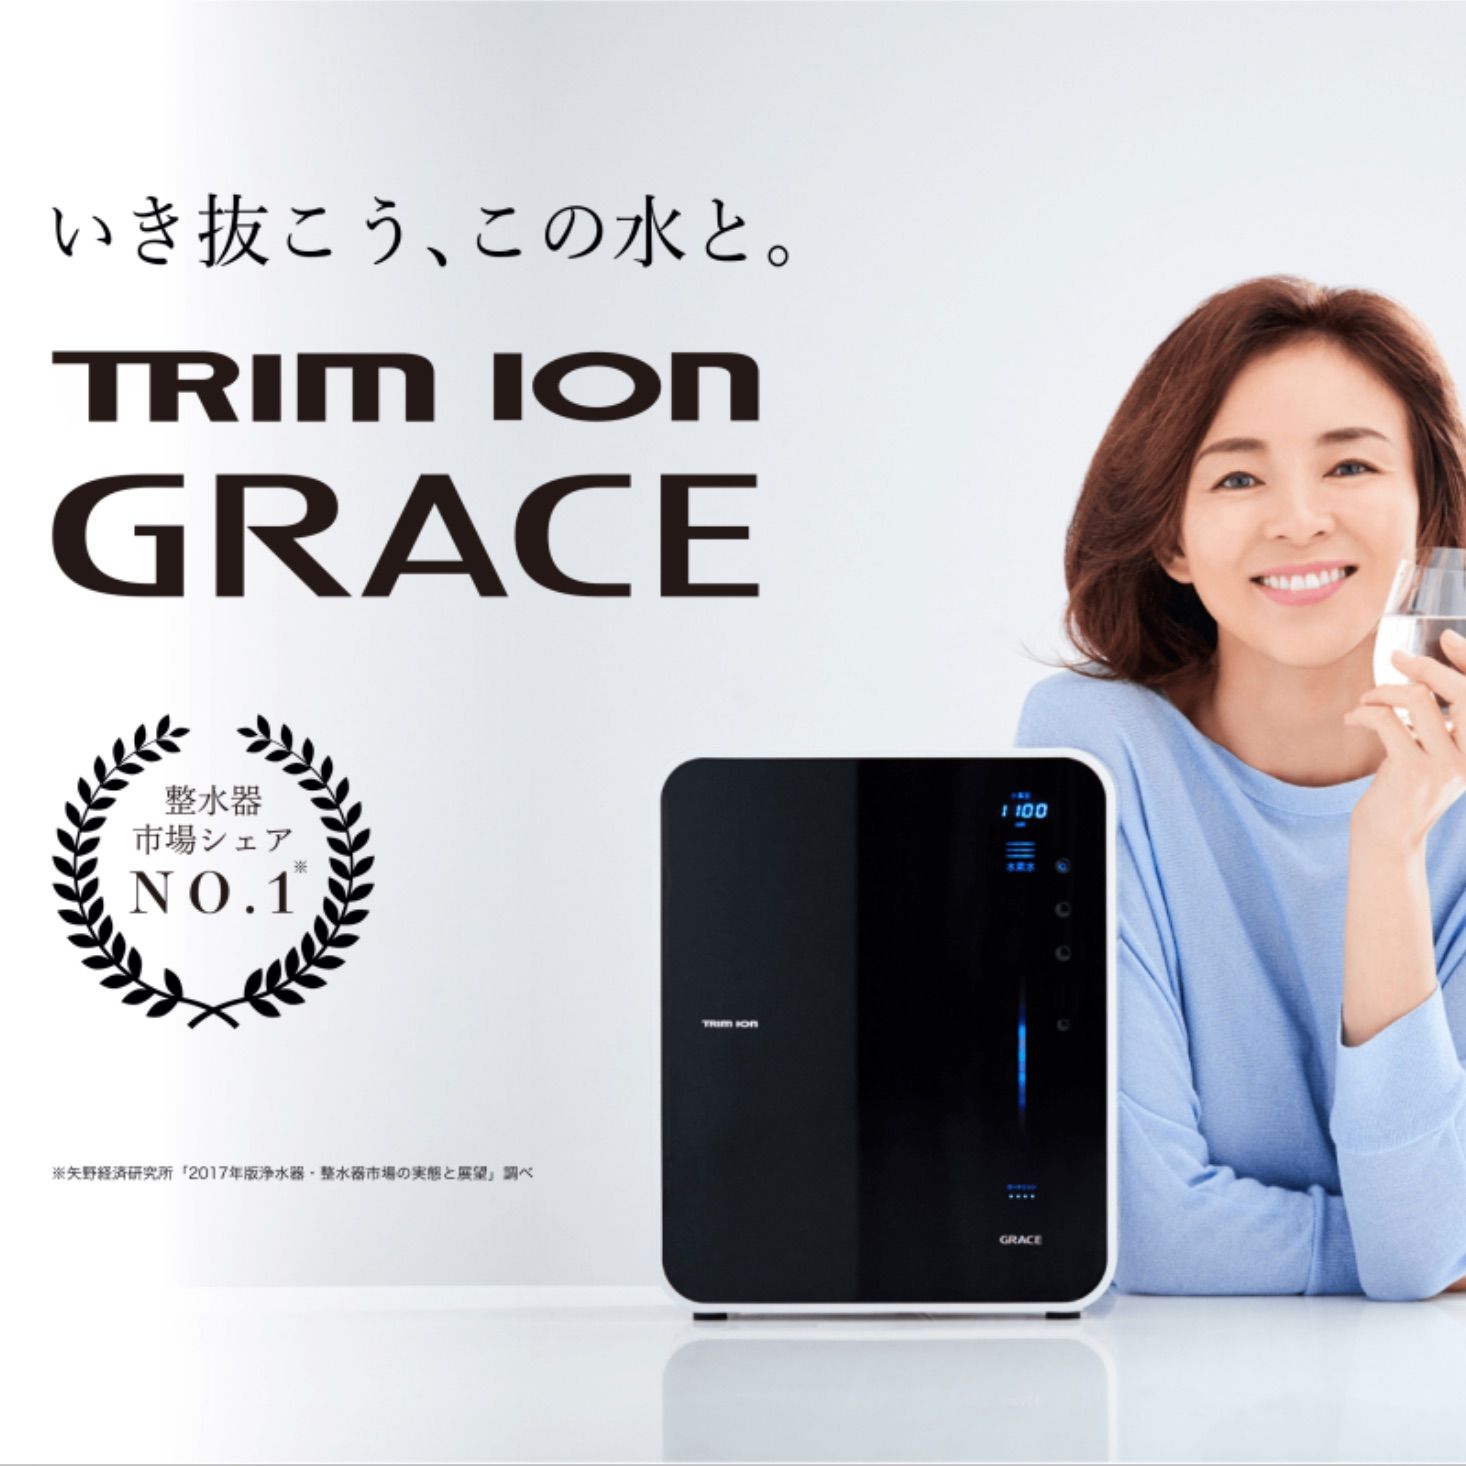  Máy Điện Giải Trim ion Grace #1 Từ Nhật Bản 